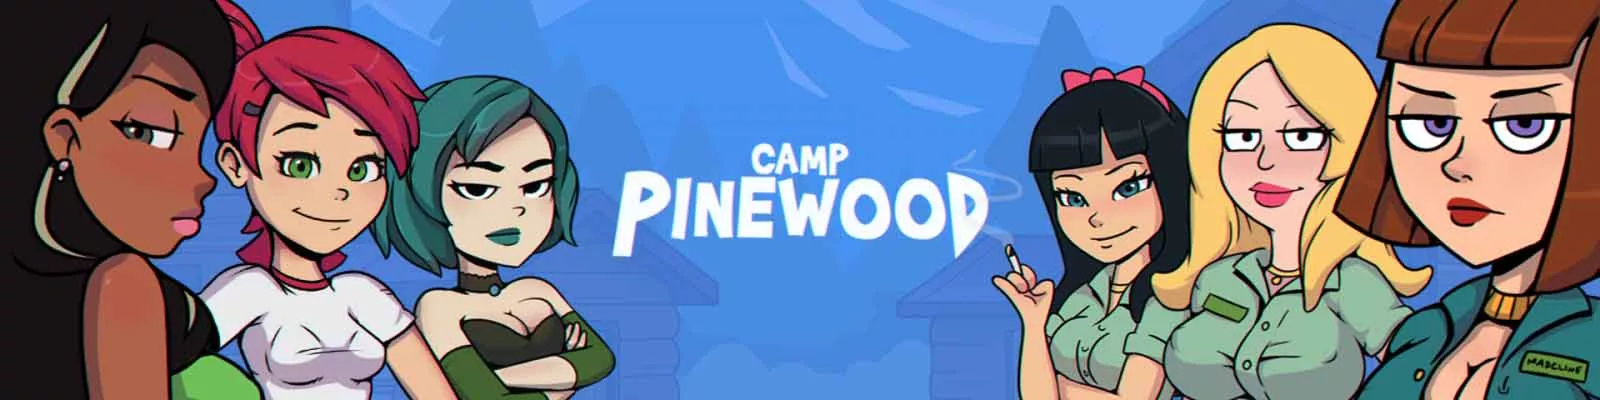 Camp Pinewood adulte jeu